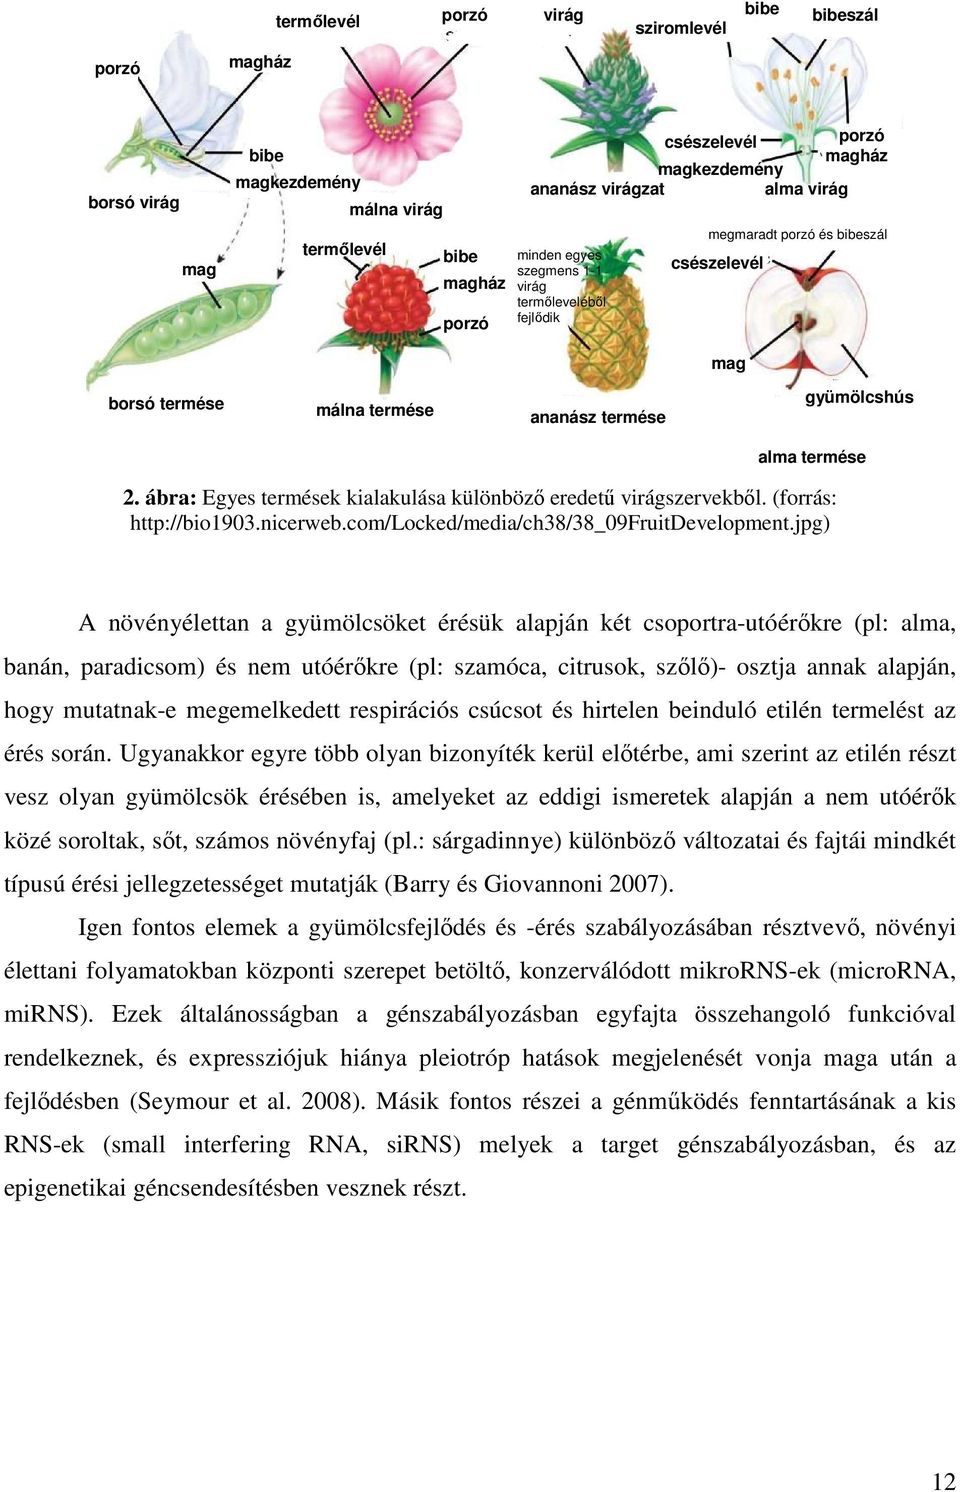 ábra: Egyes termések kialakulása különböző eredetű virágszervekből. (forrás: http://bio1903.nicerweb.com/locked/media/ch38/38_09fruitdevelopment.